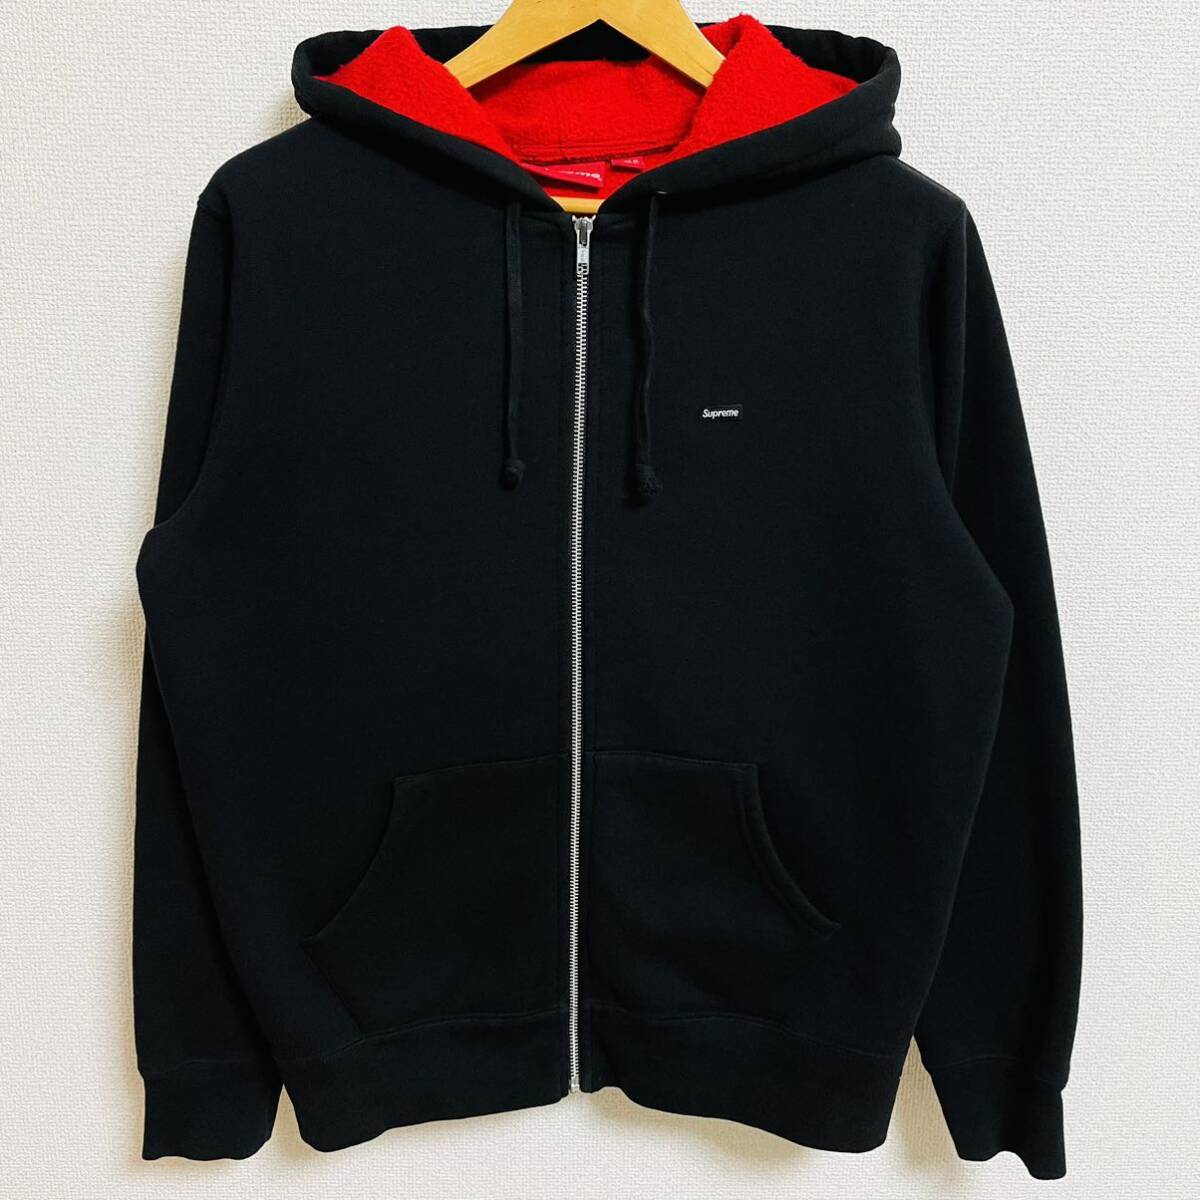 Supreme Contrast Zip Up Hooded Sweatshirt Black S 18ss 2018年 黒 ブラック コントラスト ジップアップ スウェットシャツ ボックスロゴ